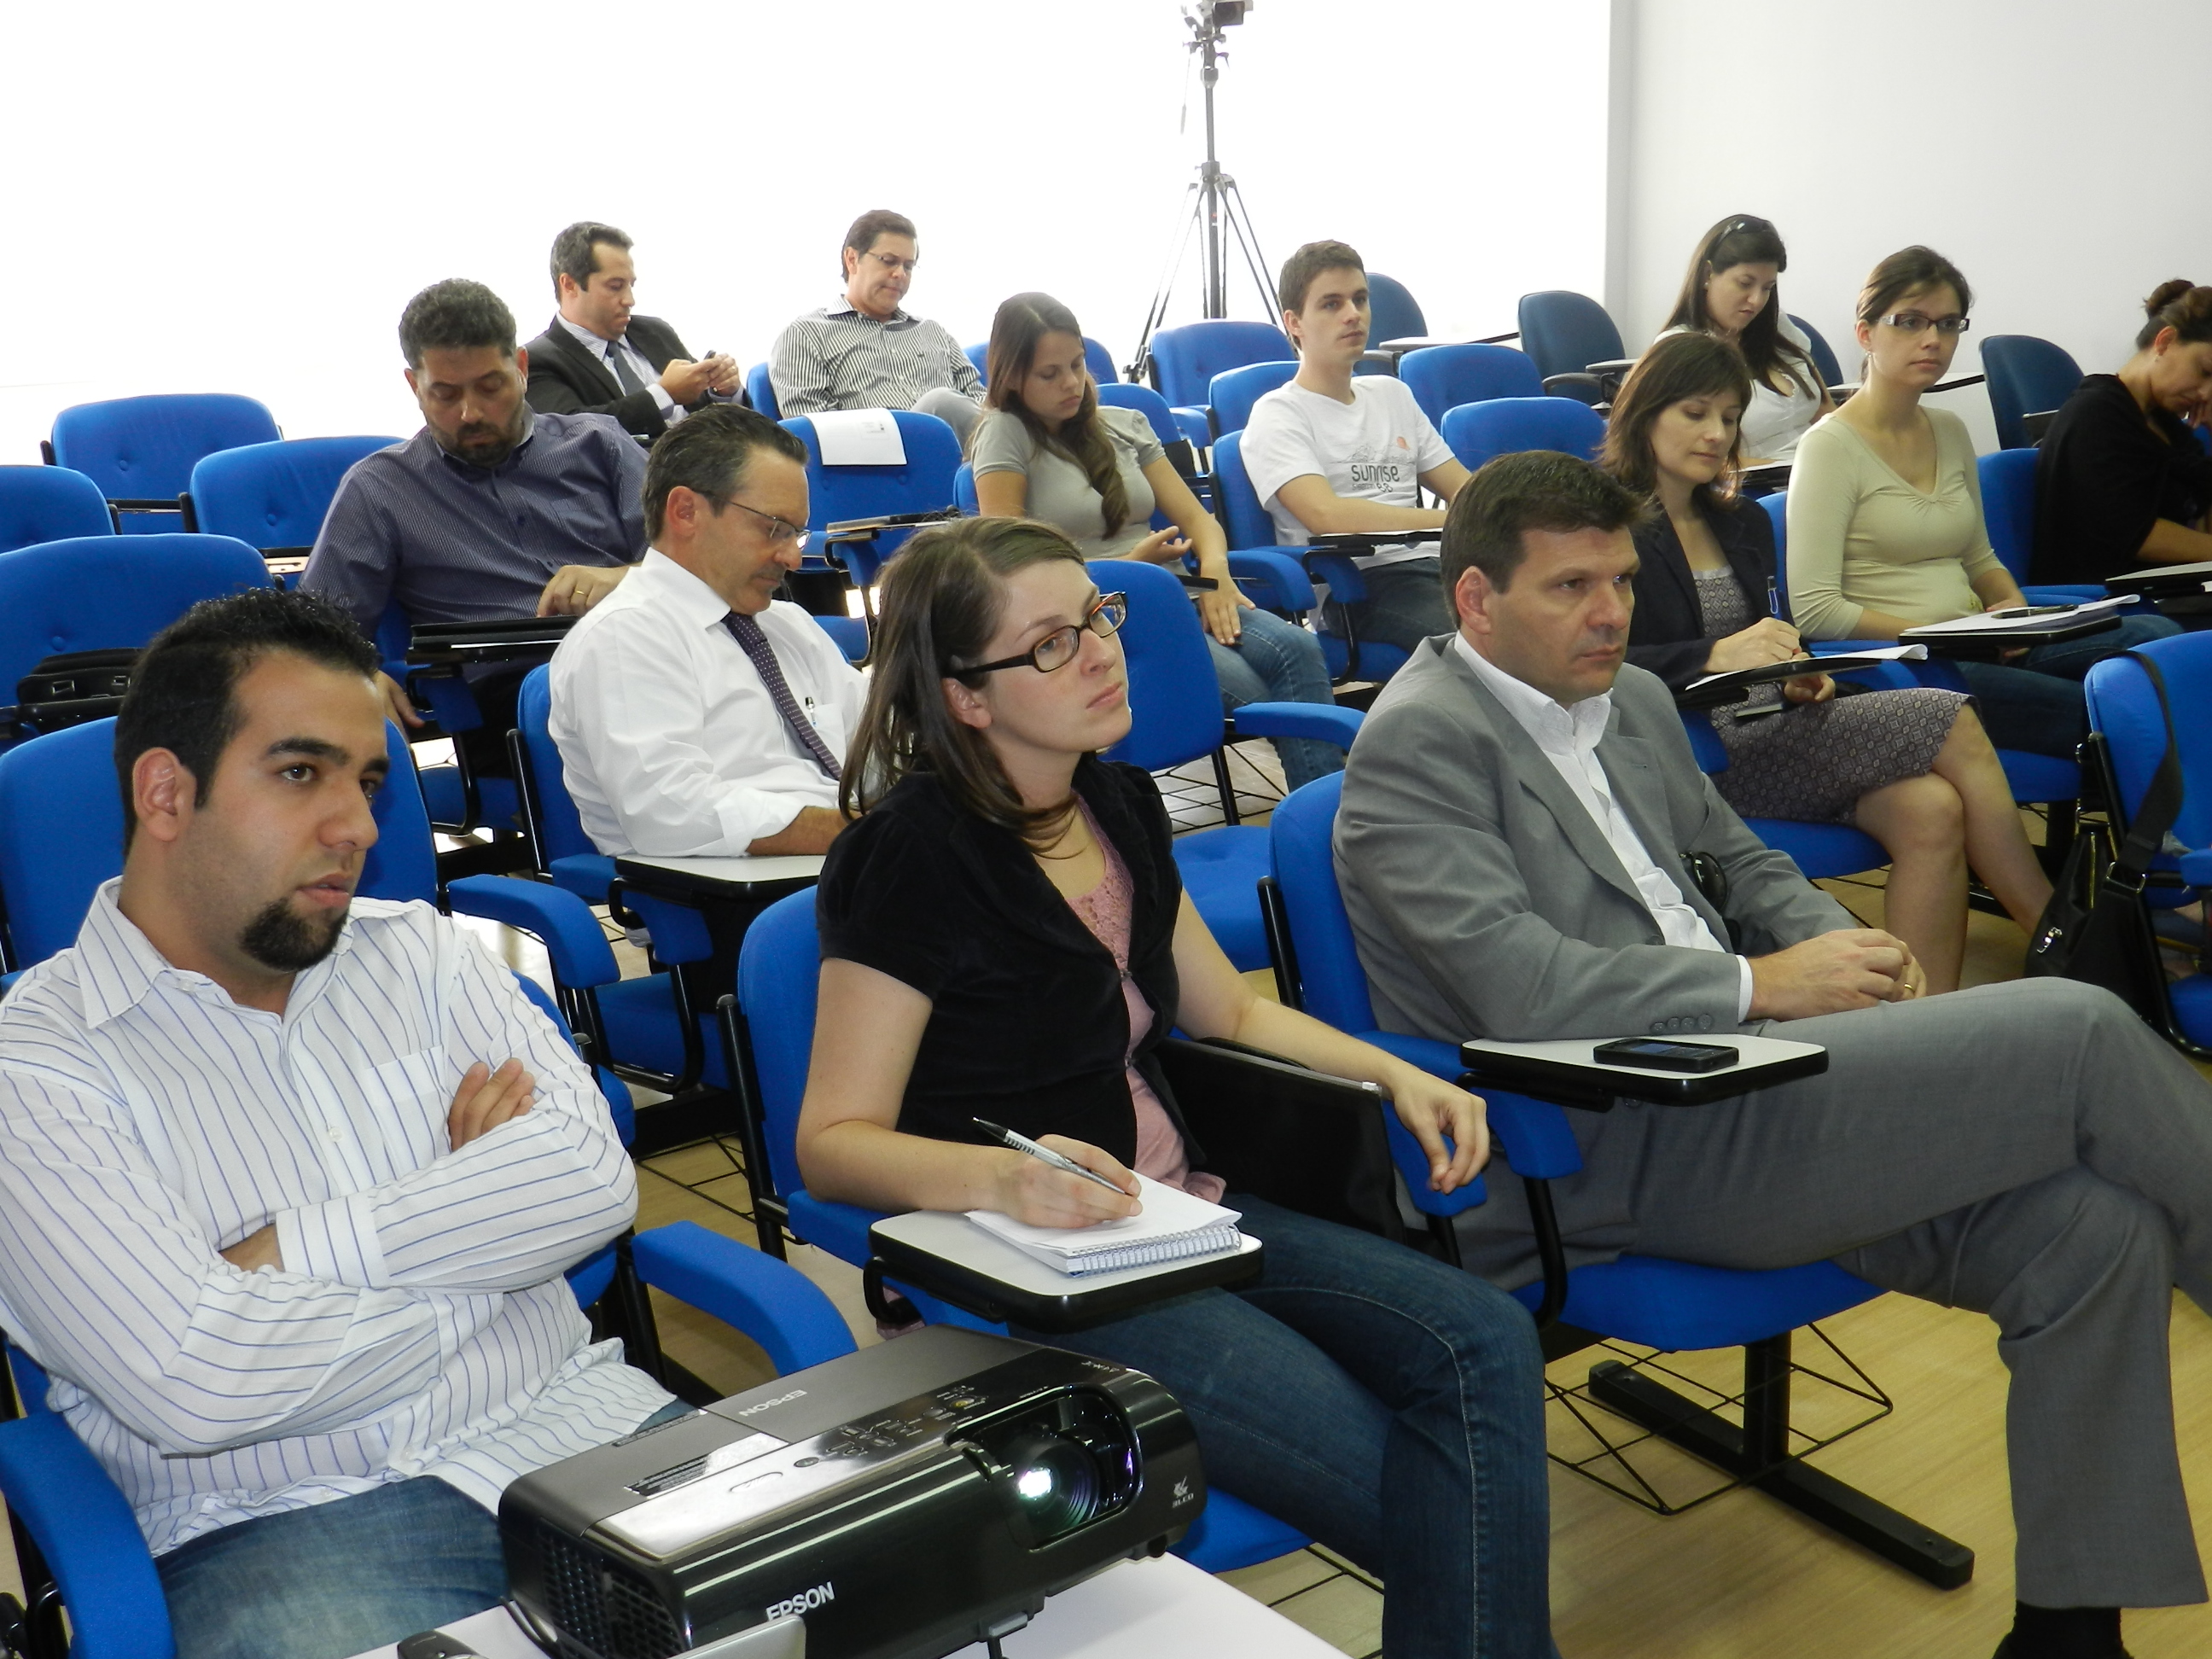 Jornalistas da Gazeta do Povo formaram plateia participativa e receberam informações dos palestrantes sobre matéria registral e notarial